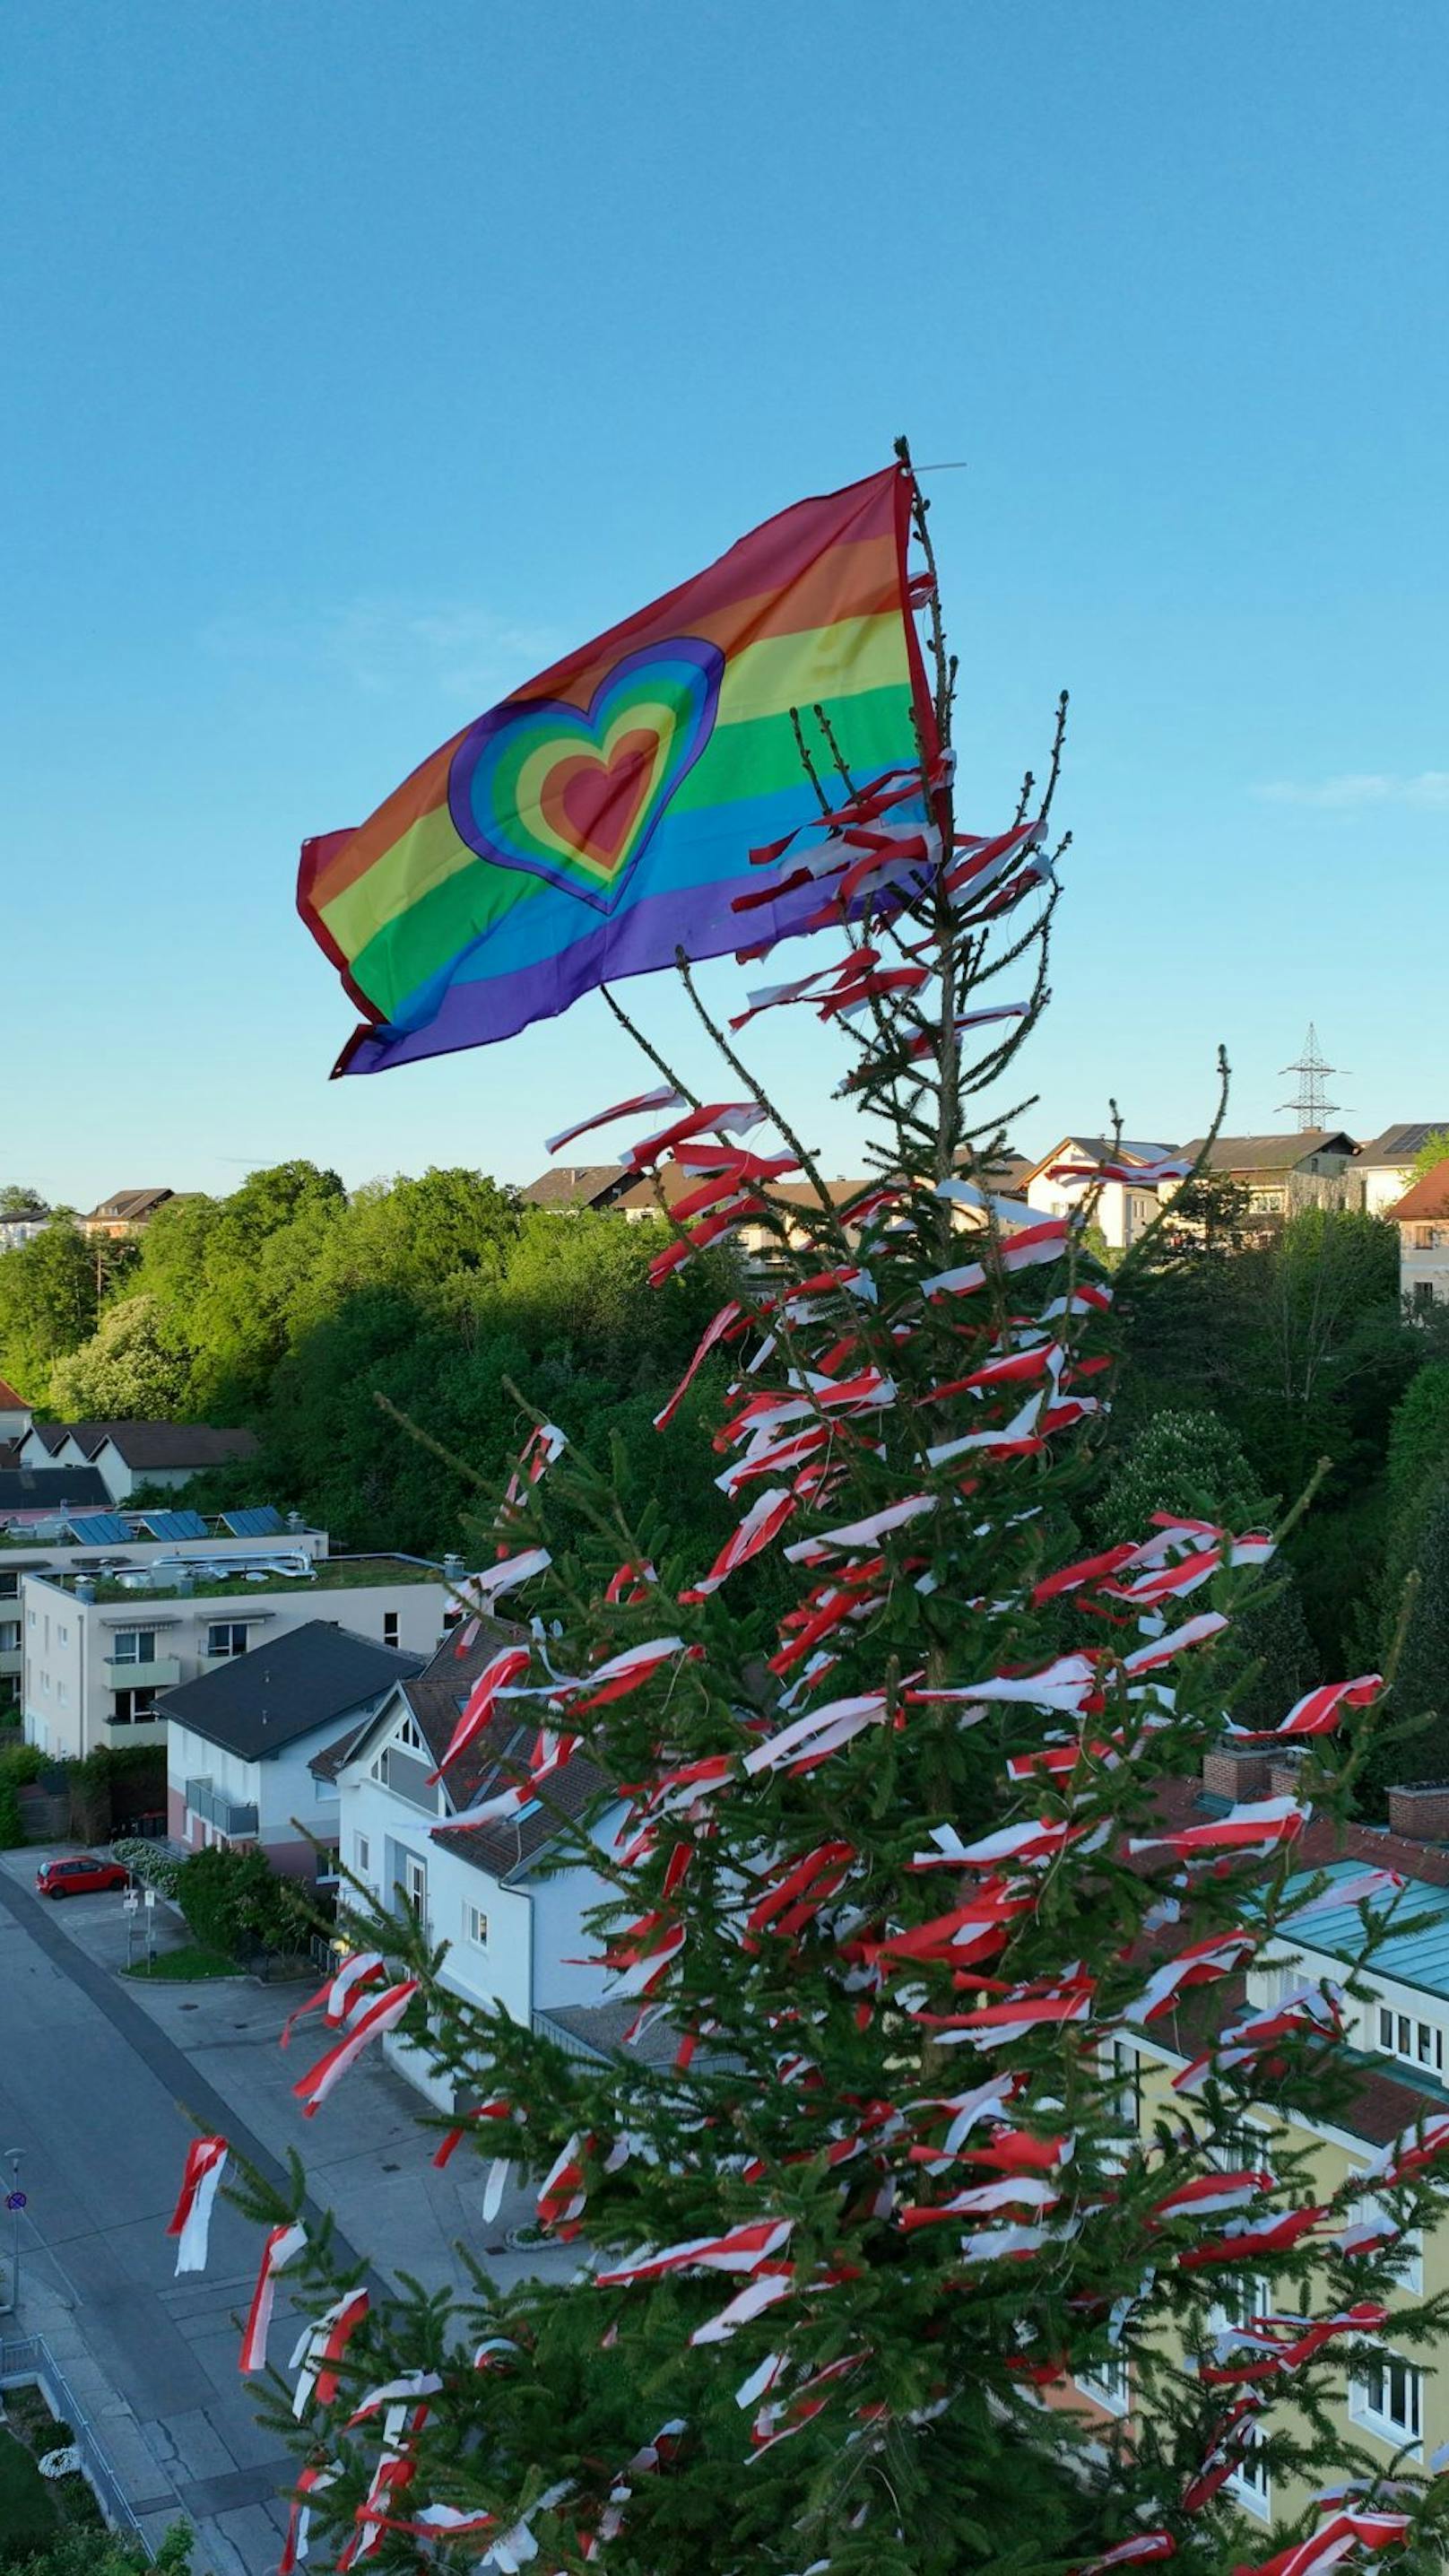 Regenbogenflagge am Maibaum, Dorfbewohner nicht erfreut